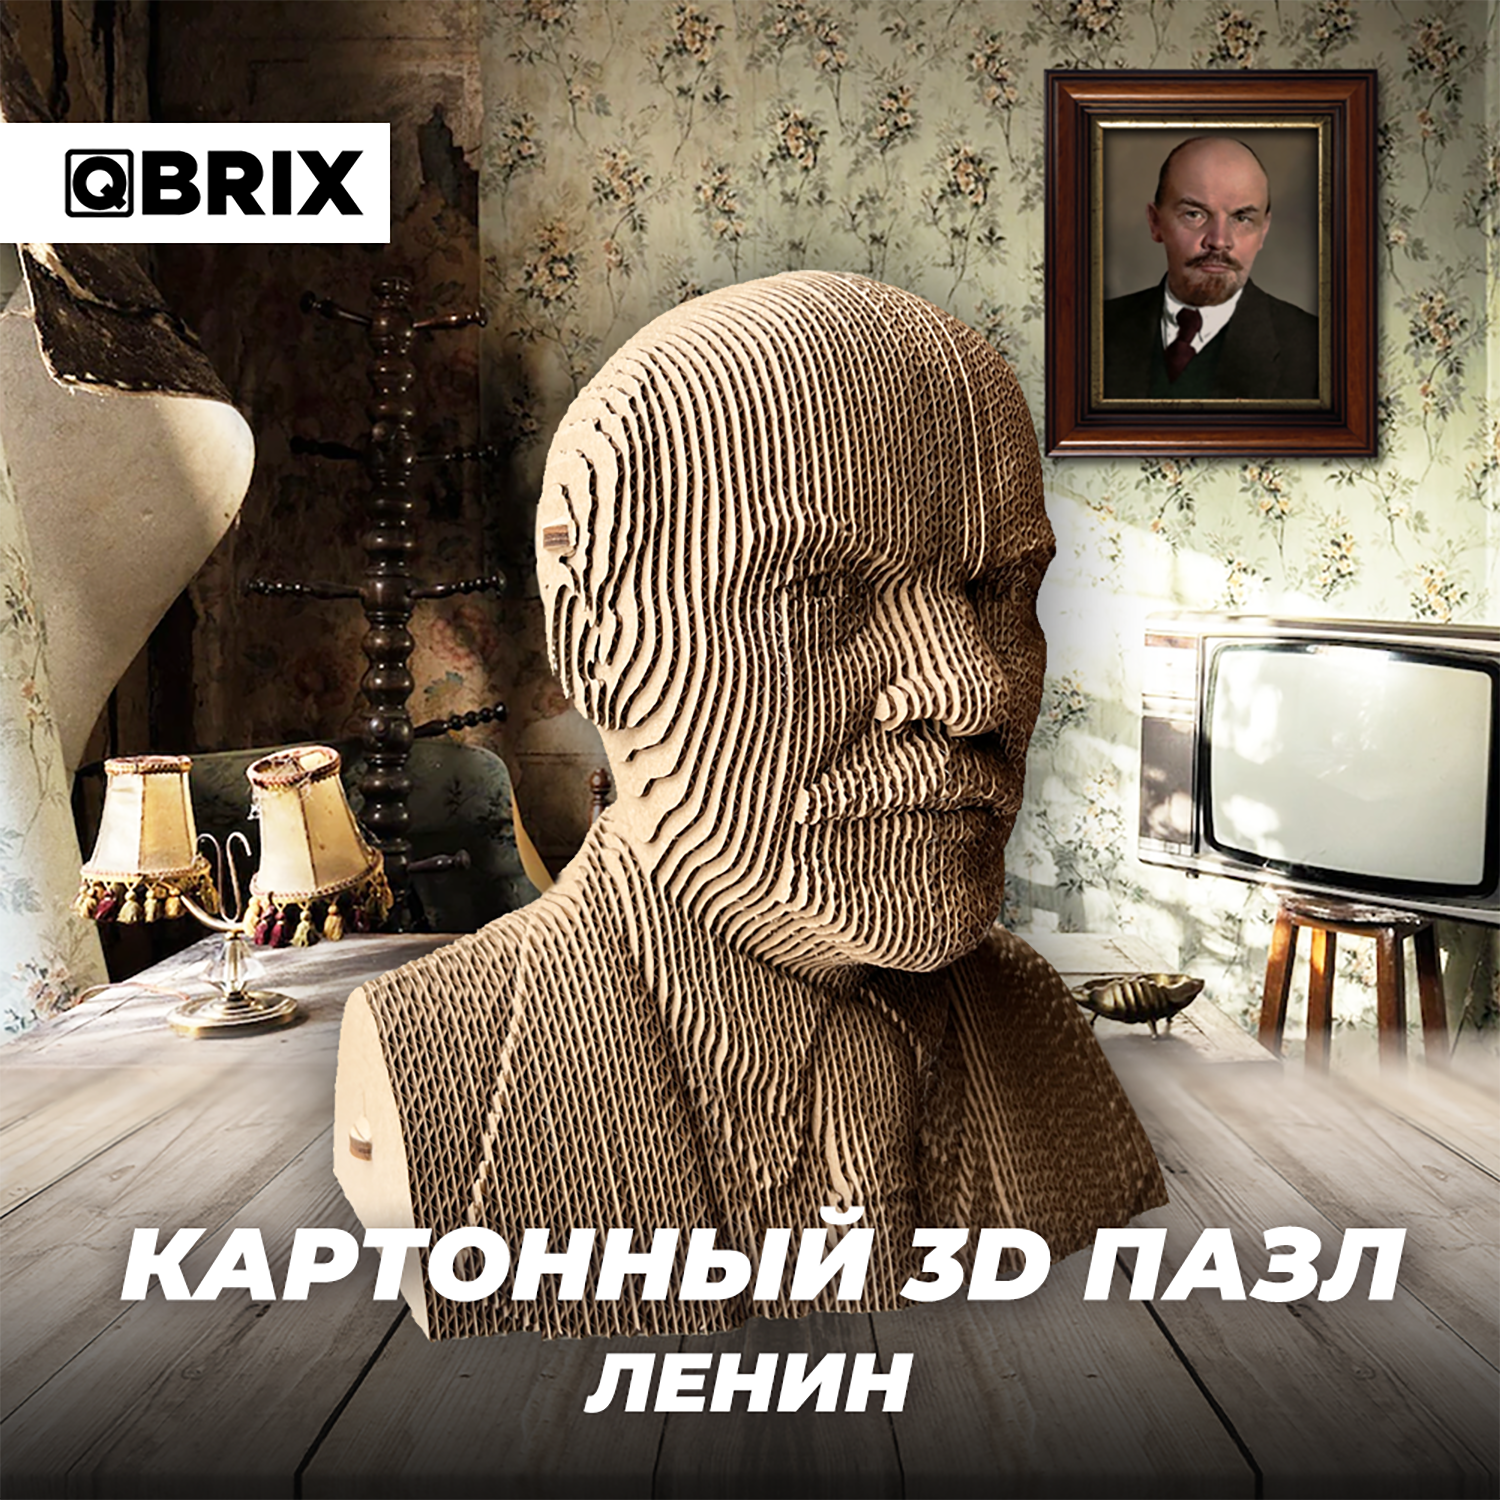 Конструктор QBRIX 3D картонный Ленин 20031 20031 - фото 6